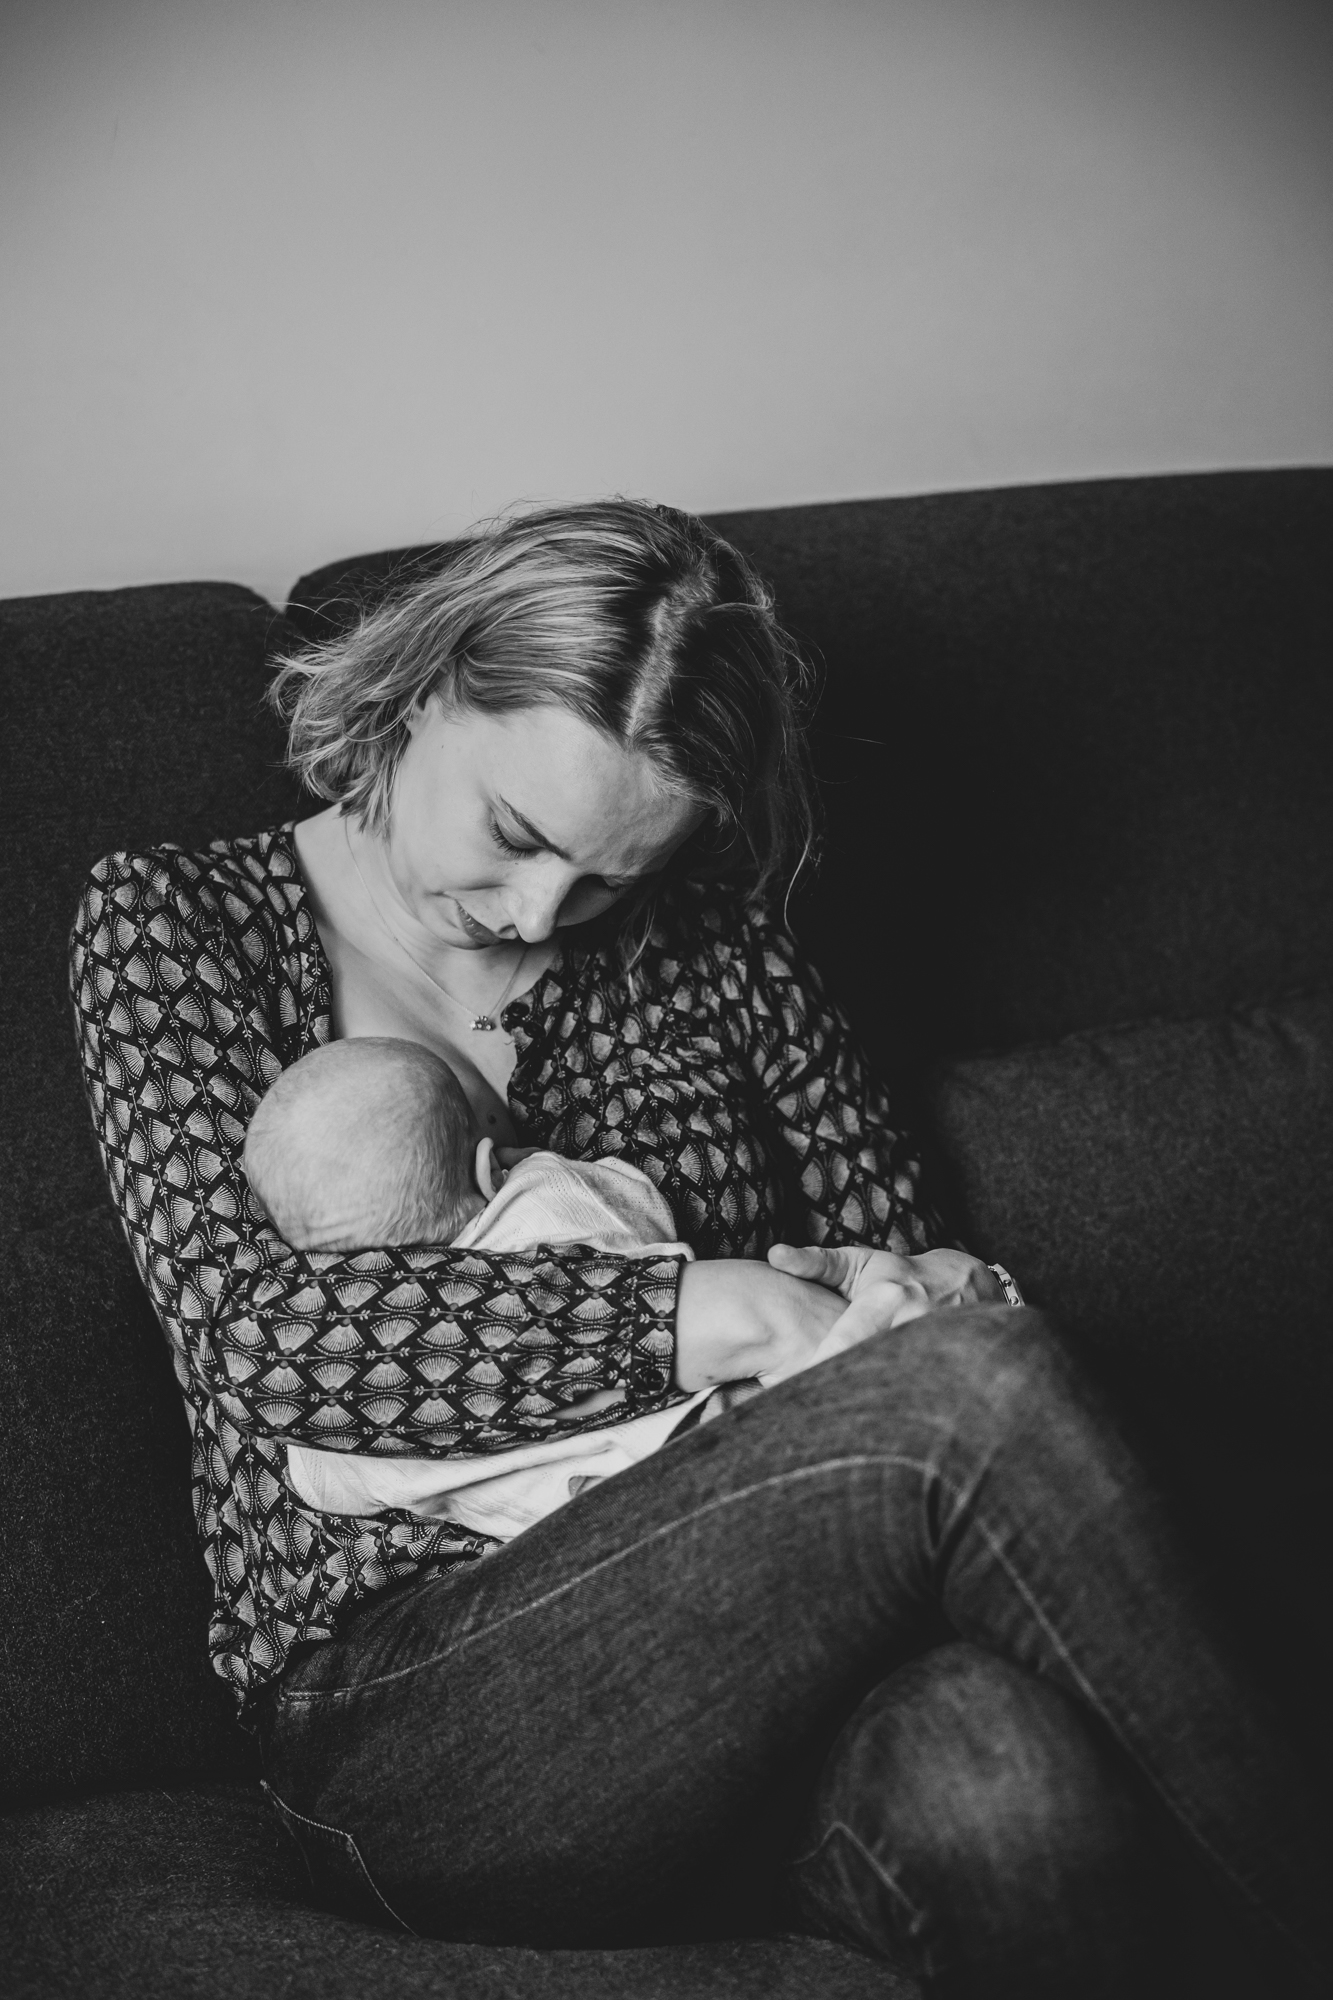 Newbornfotografie door fotograaf Nickie Fotografie uit Dokkum, Friesland. Moeder heeft haar pasgeboren kindje op schoot.